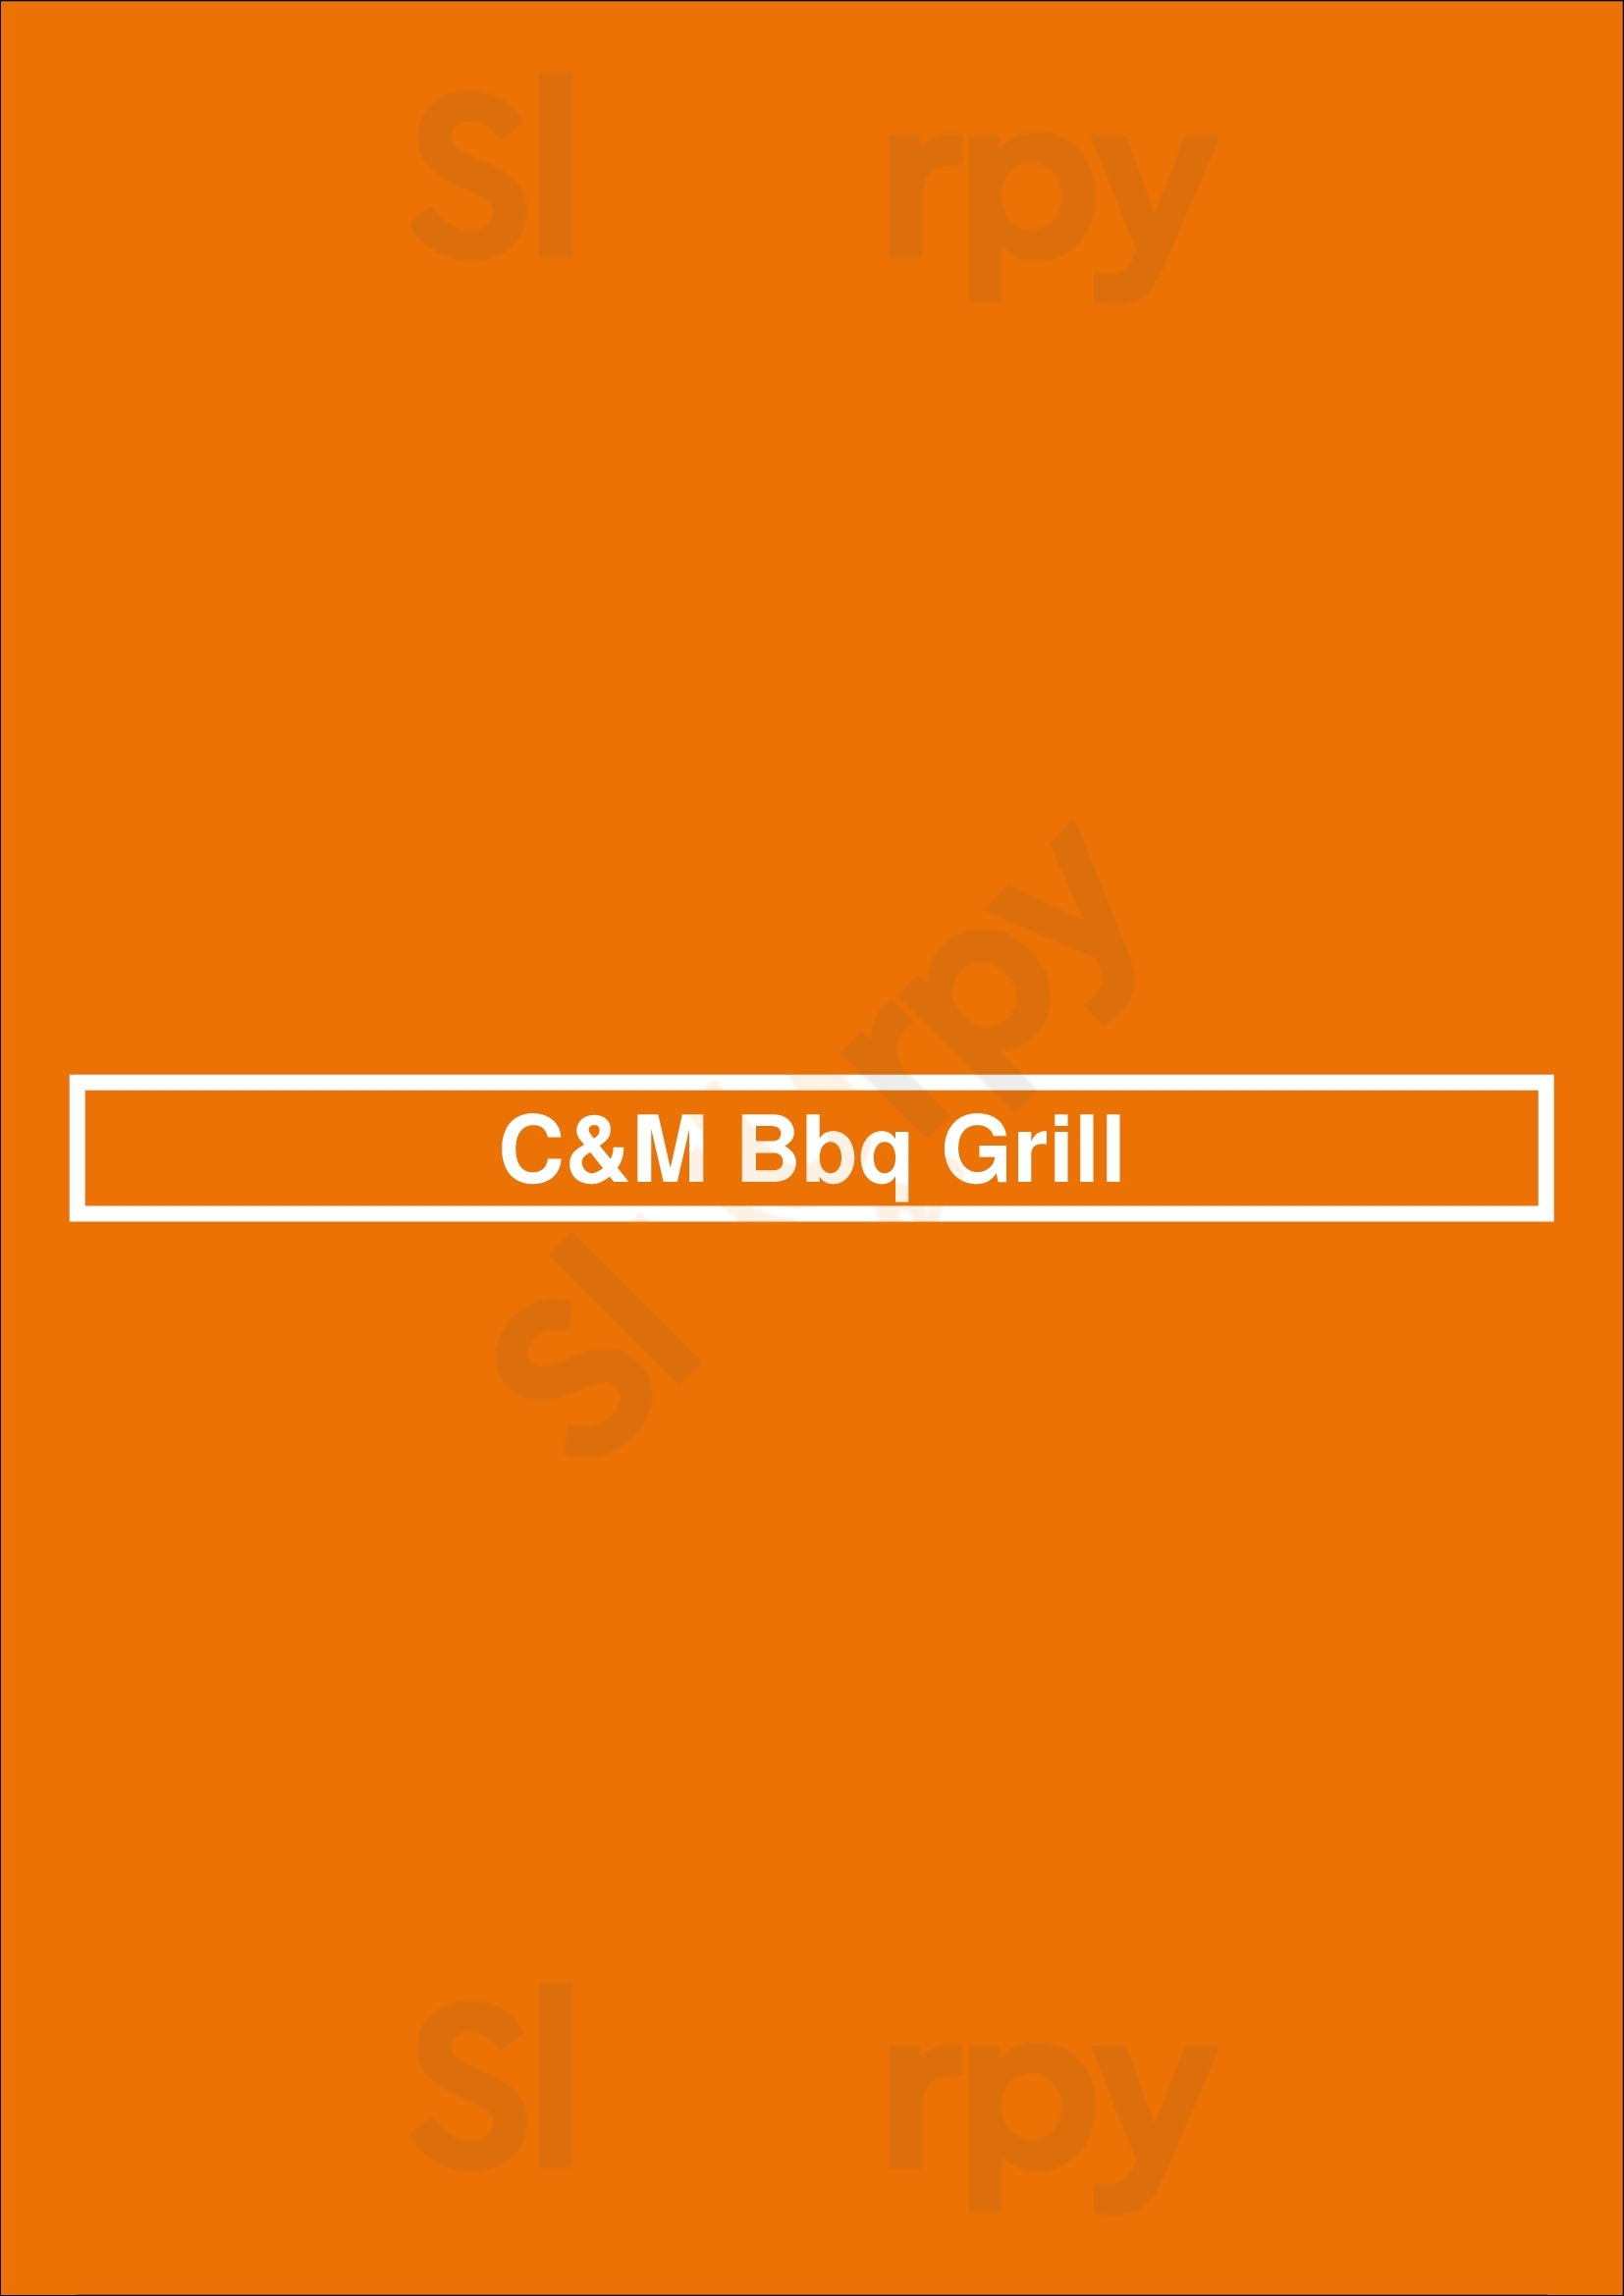 C&m Bbq Grill Cincinnati Menu - 1